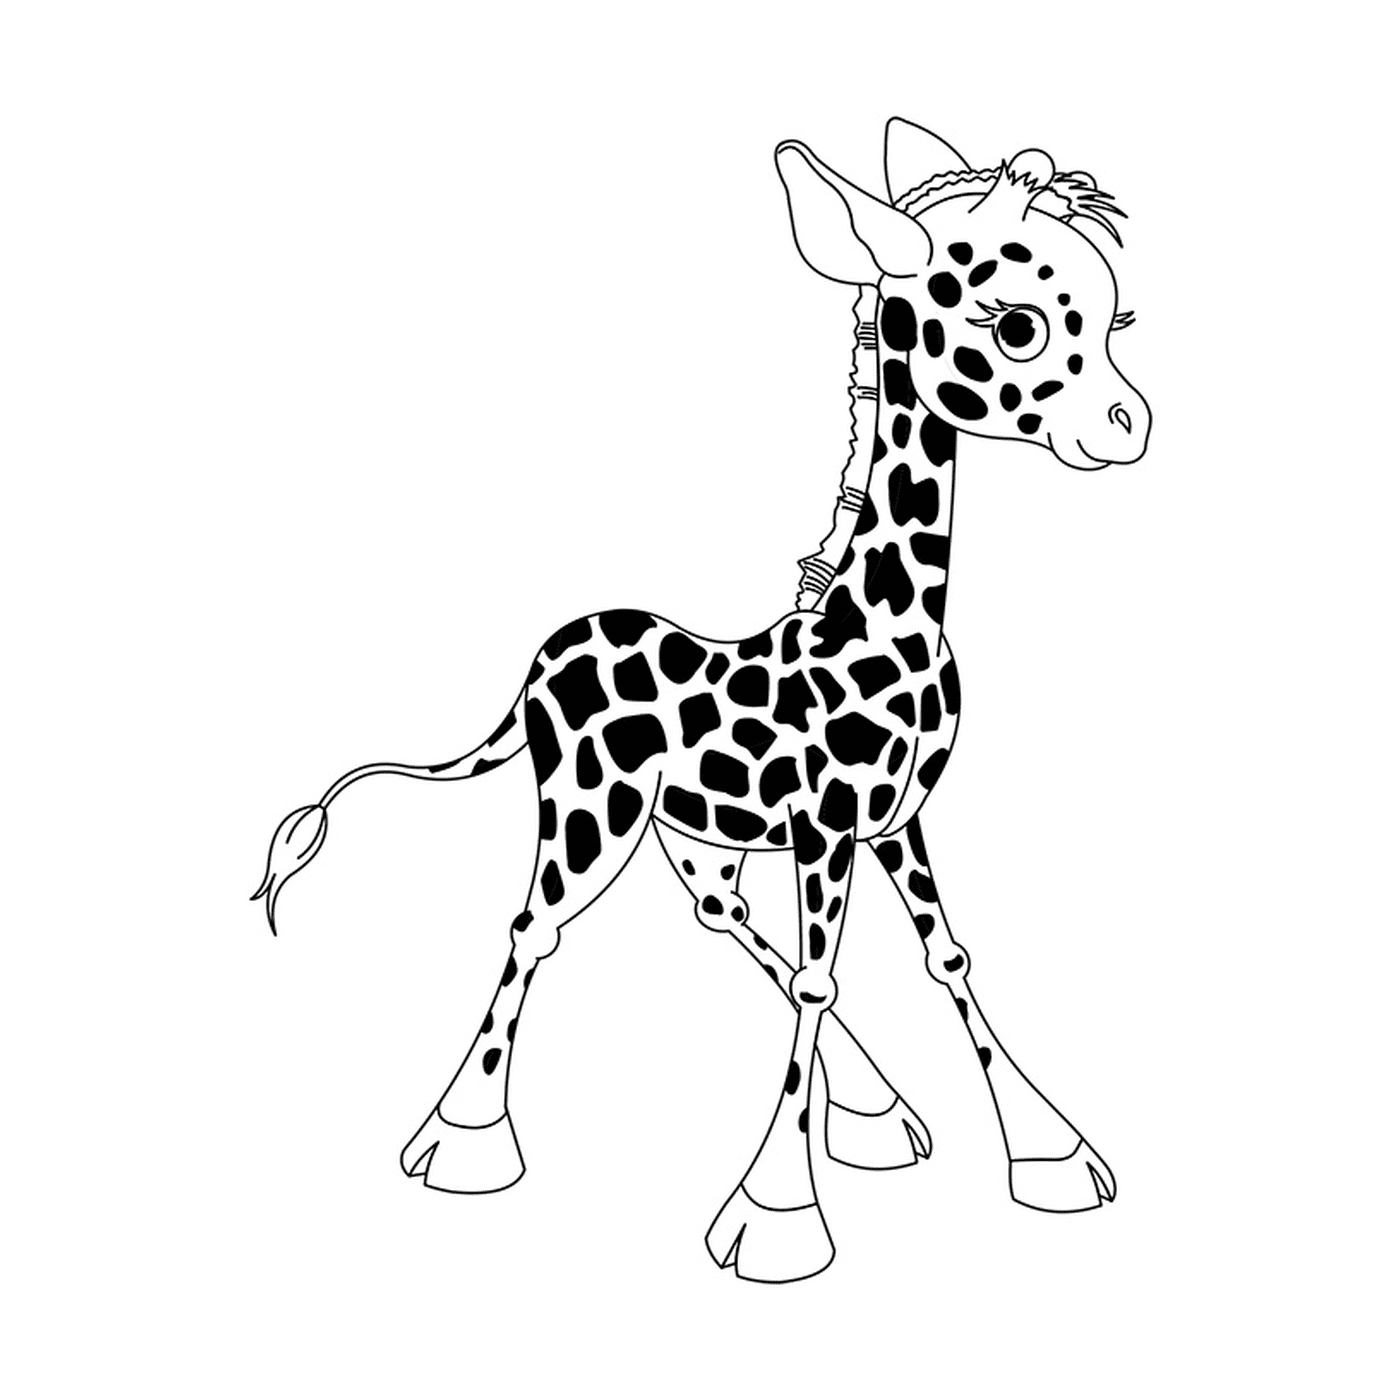  A giraffe baby standing 